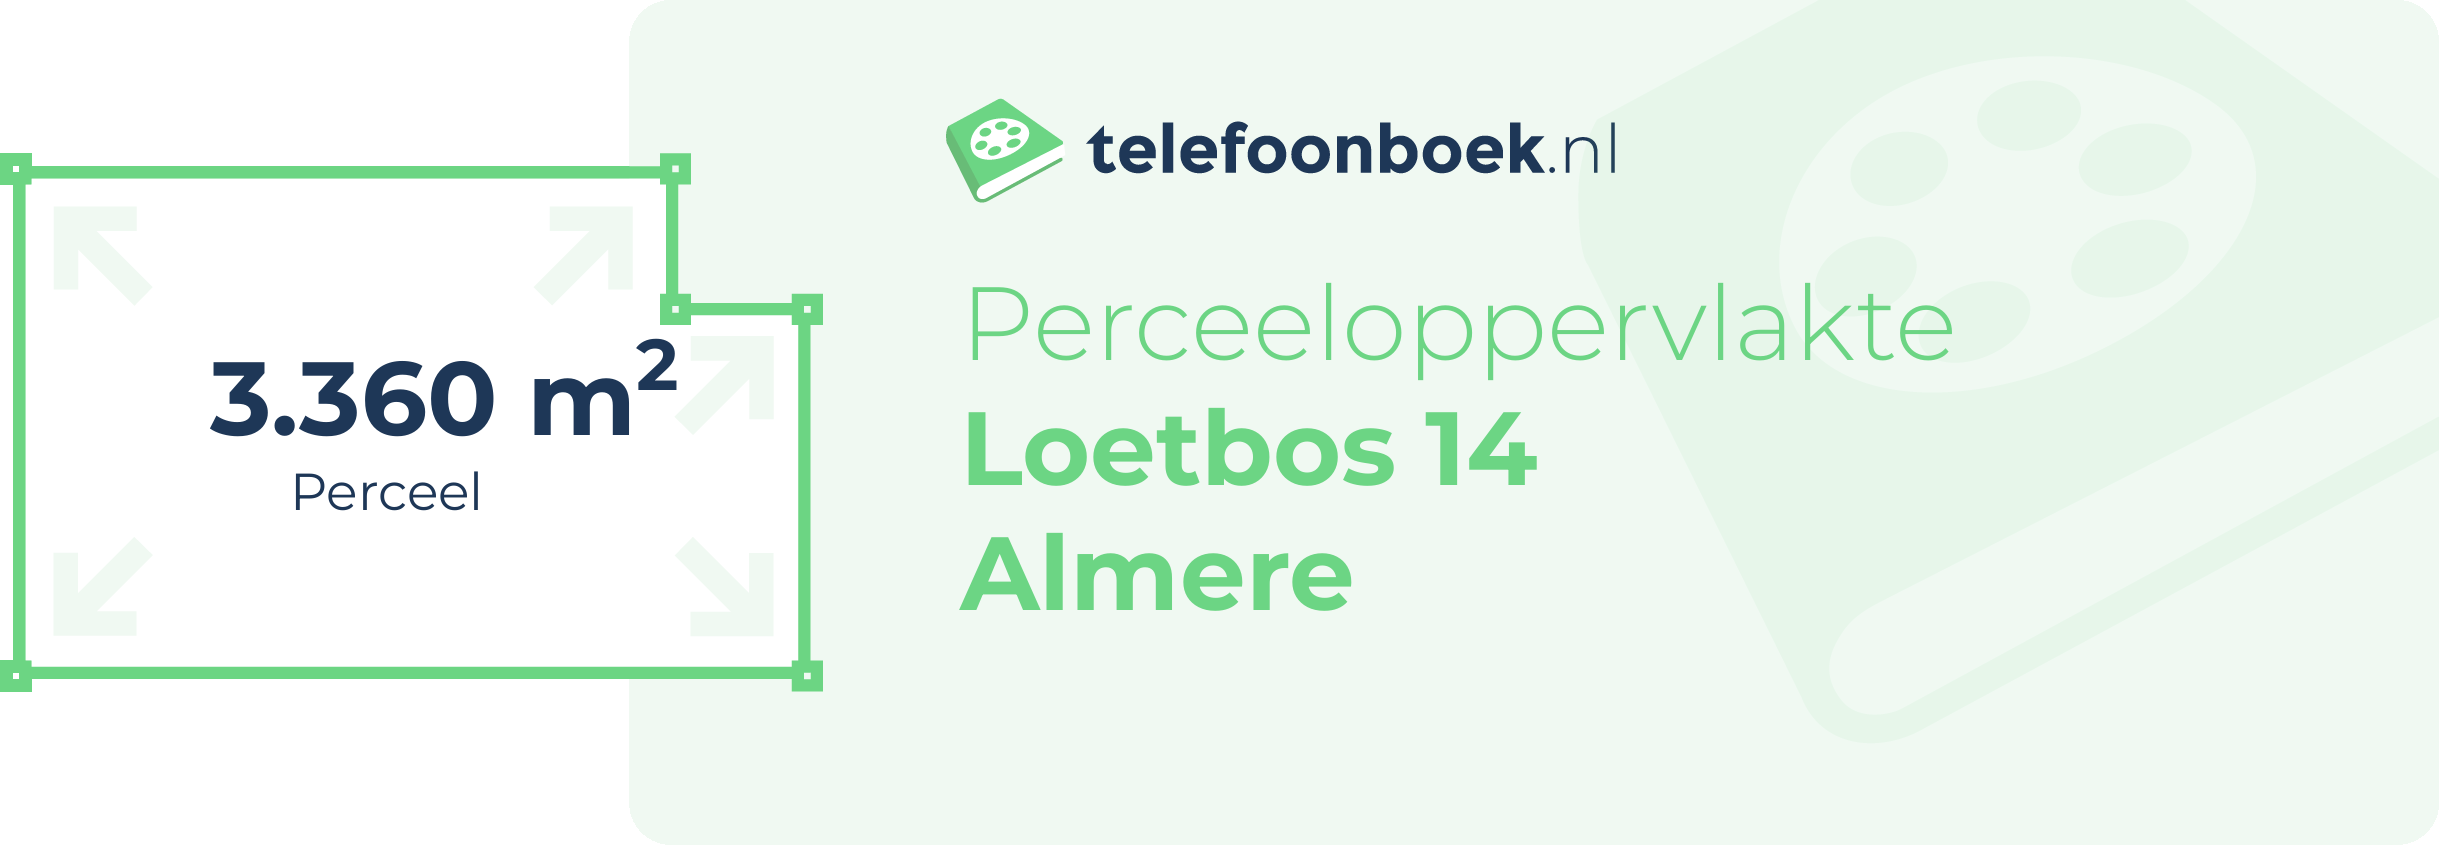 Perceeloppervlakte Loetbos 14 Almere